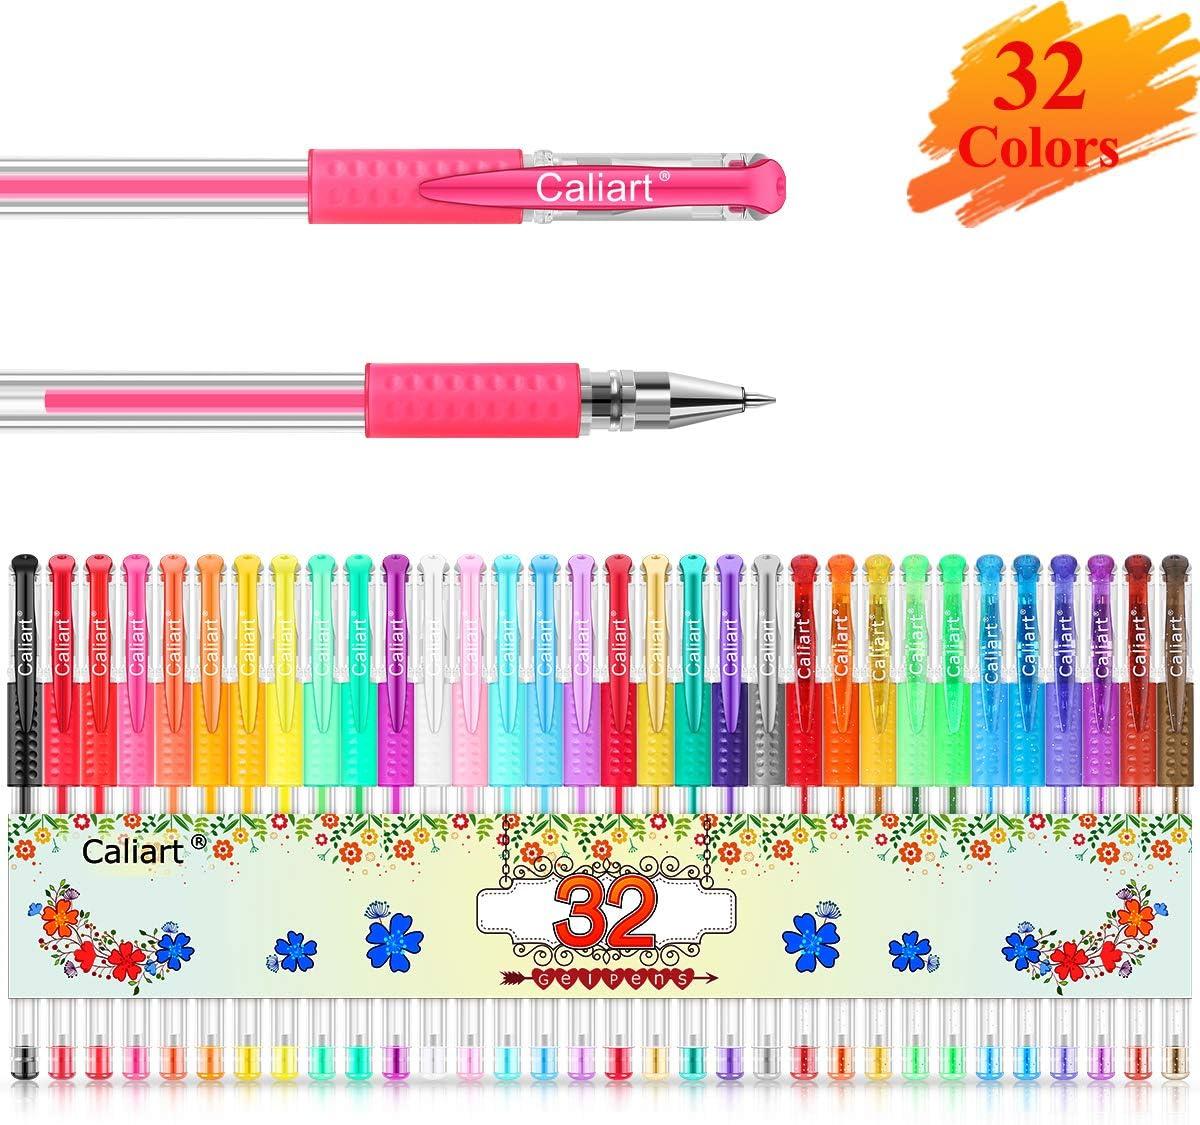  Caliart Gel Pens, 40% More Ink Colored Gel Markers